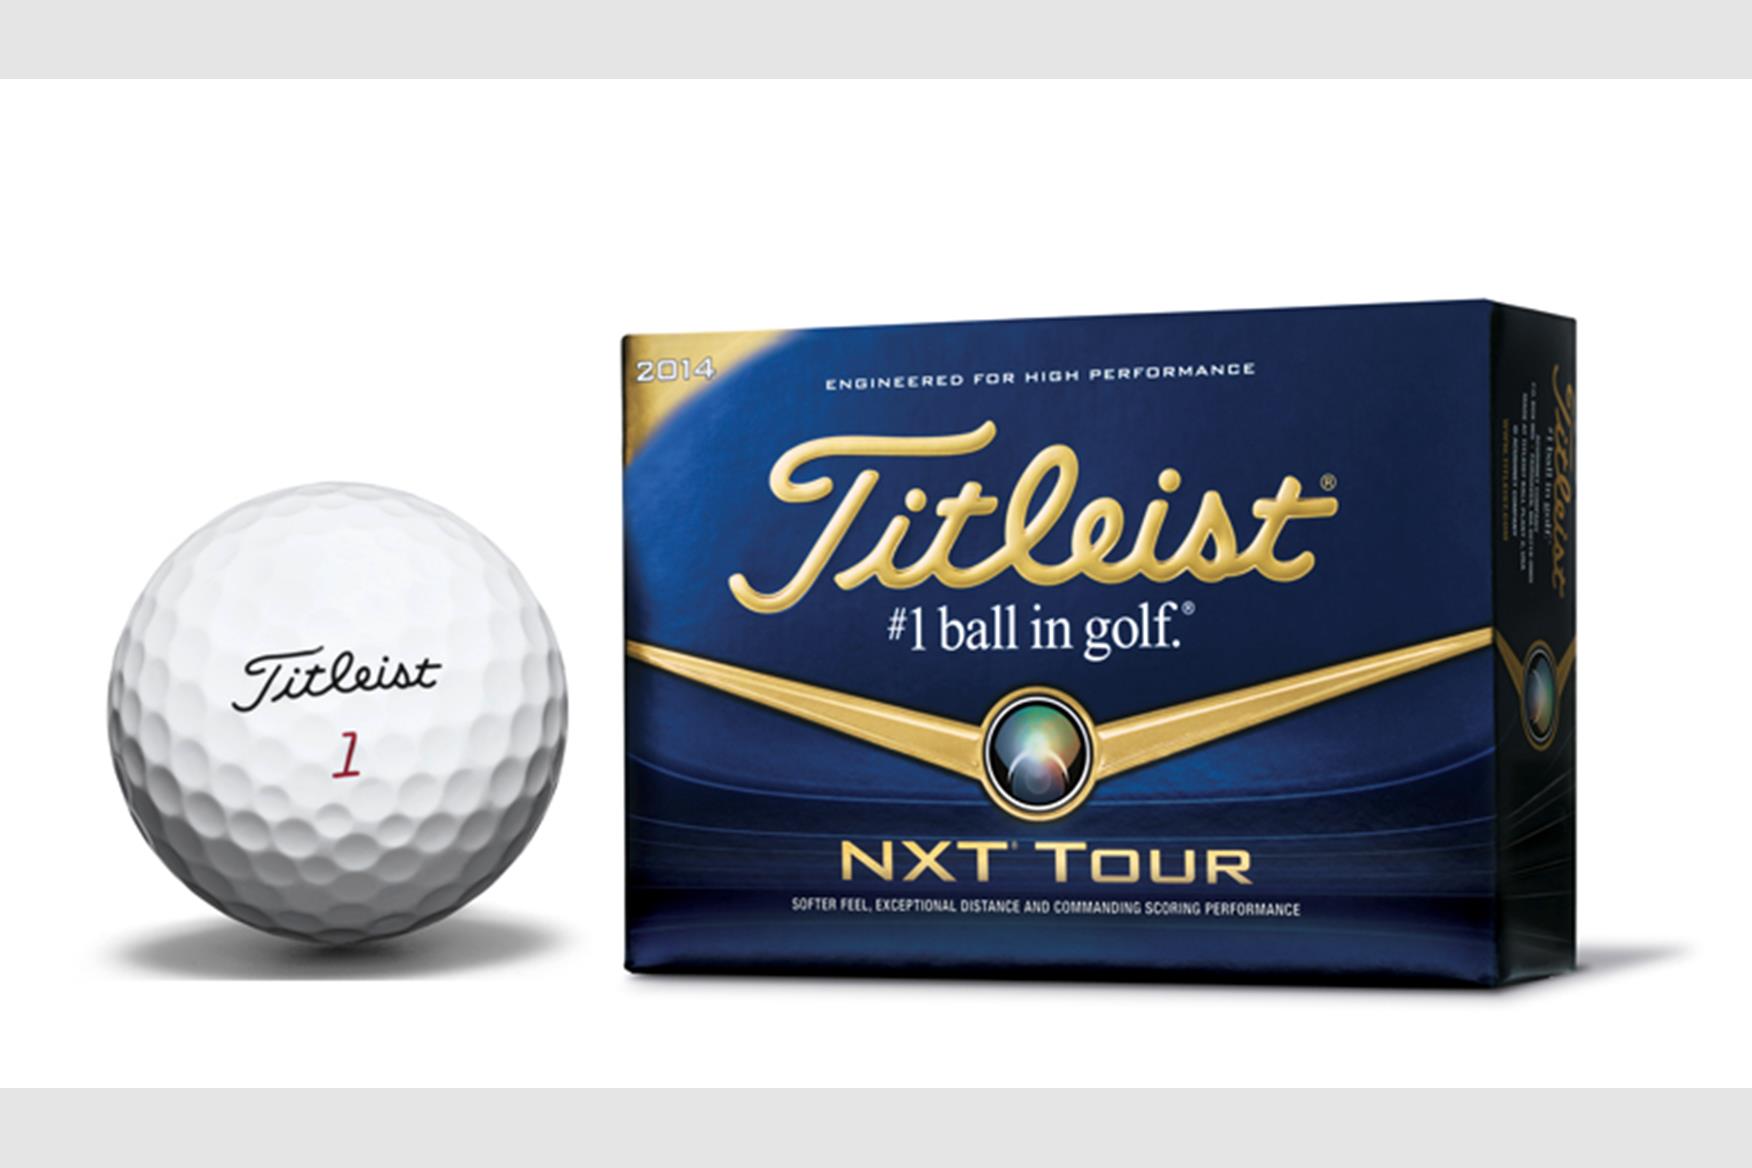 Titleist NXT Tour Golf Balls 2014 Review | Equipment Reviews | Today's ...